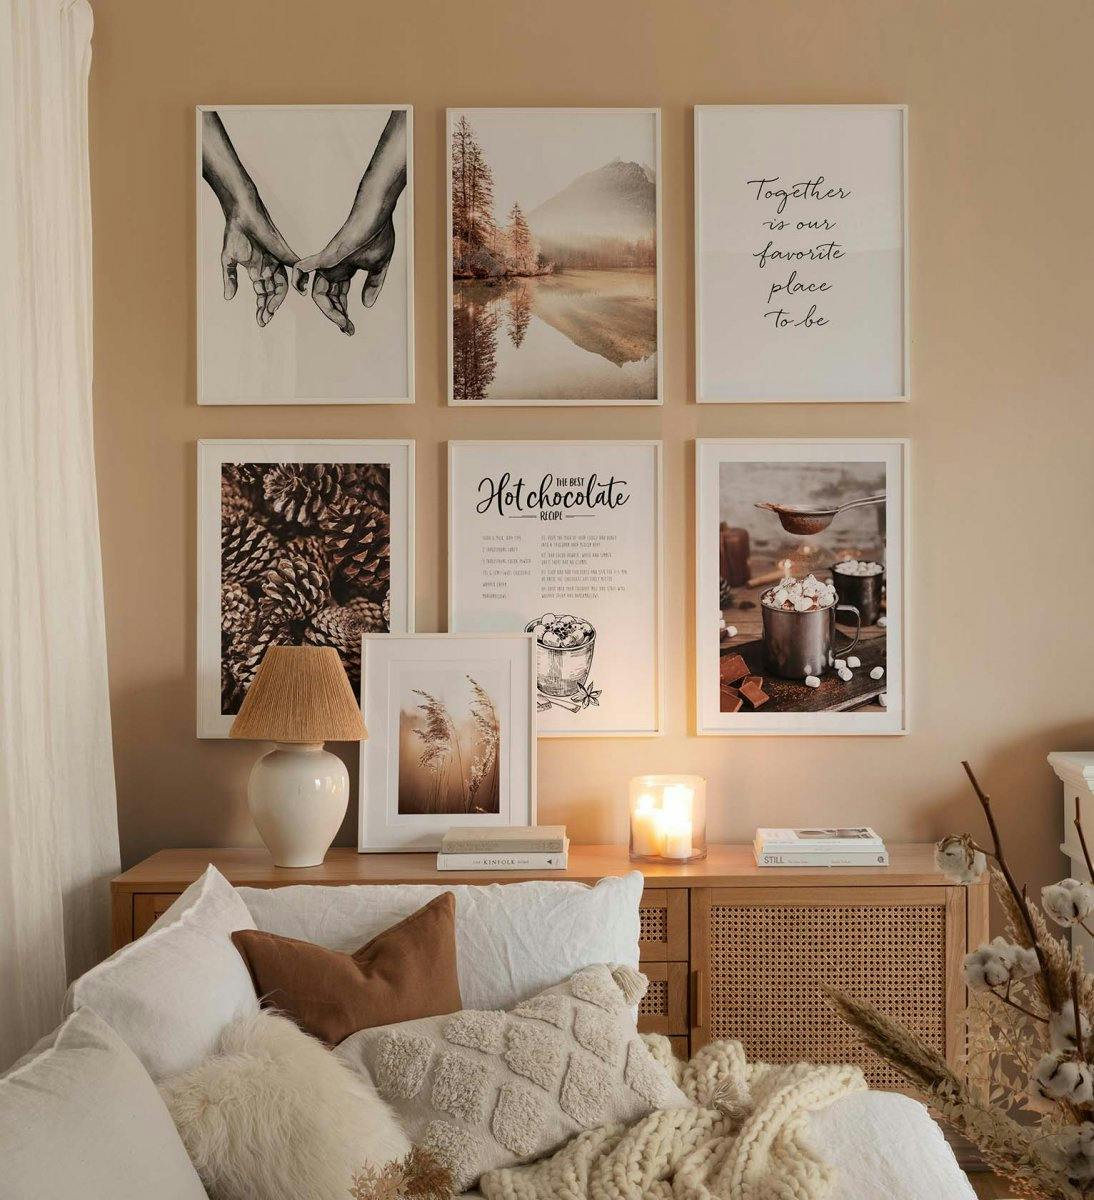 جدار معرض أحادي اللون بإطارات خشبية بيضاء مع مطبوعات شتوية وطبيعية باللون البني والبيج لغرفة المعيشة